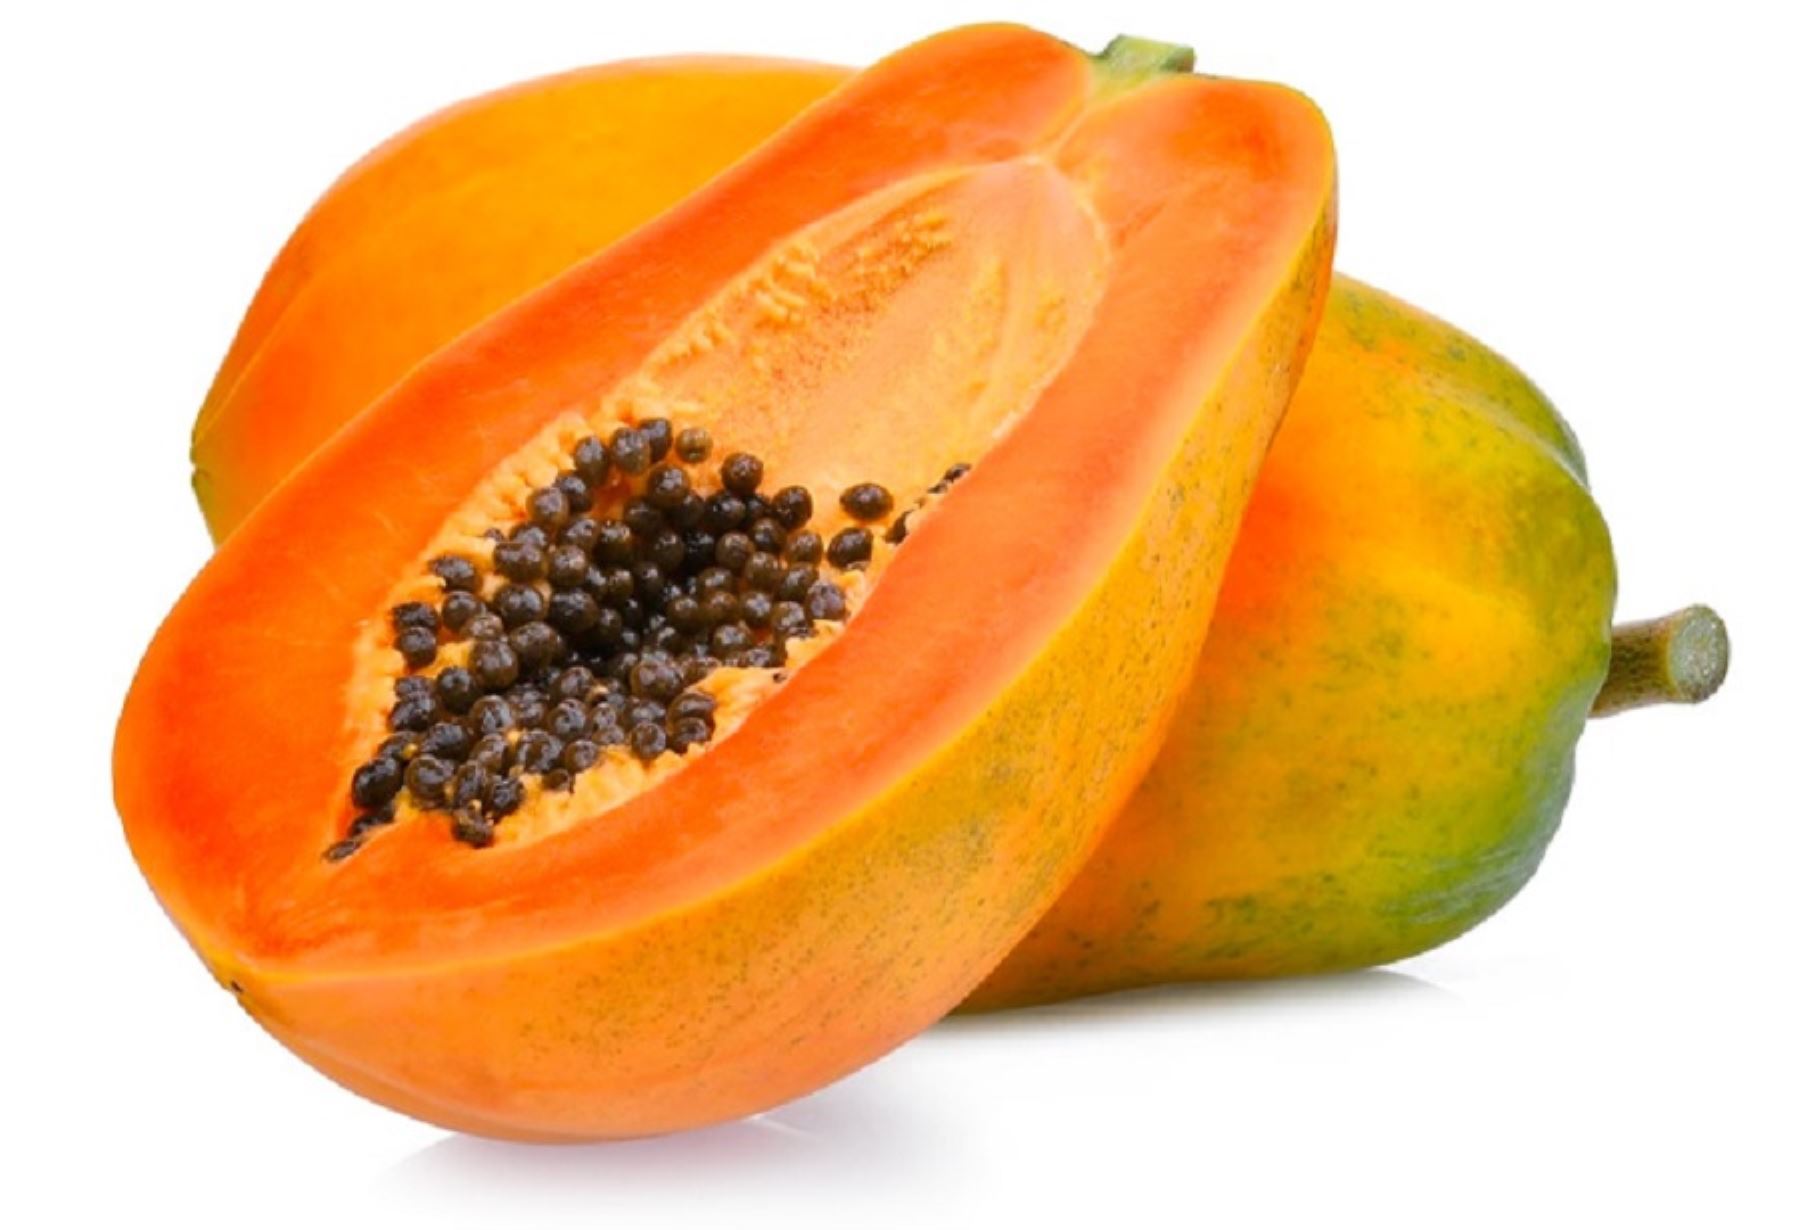 La papaya es una gran fuente de vitamina A, B, C, E y K, además de minerales como el calcio, el potasio, el magnesio y el cobre que son fundamentales para el óptimo funcionamiento del organismo y del sistema inmunológico.